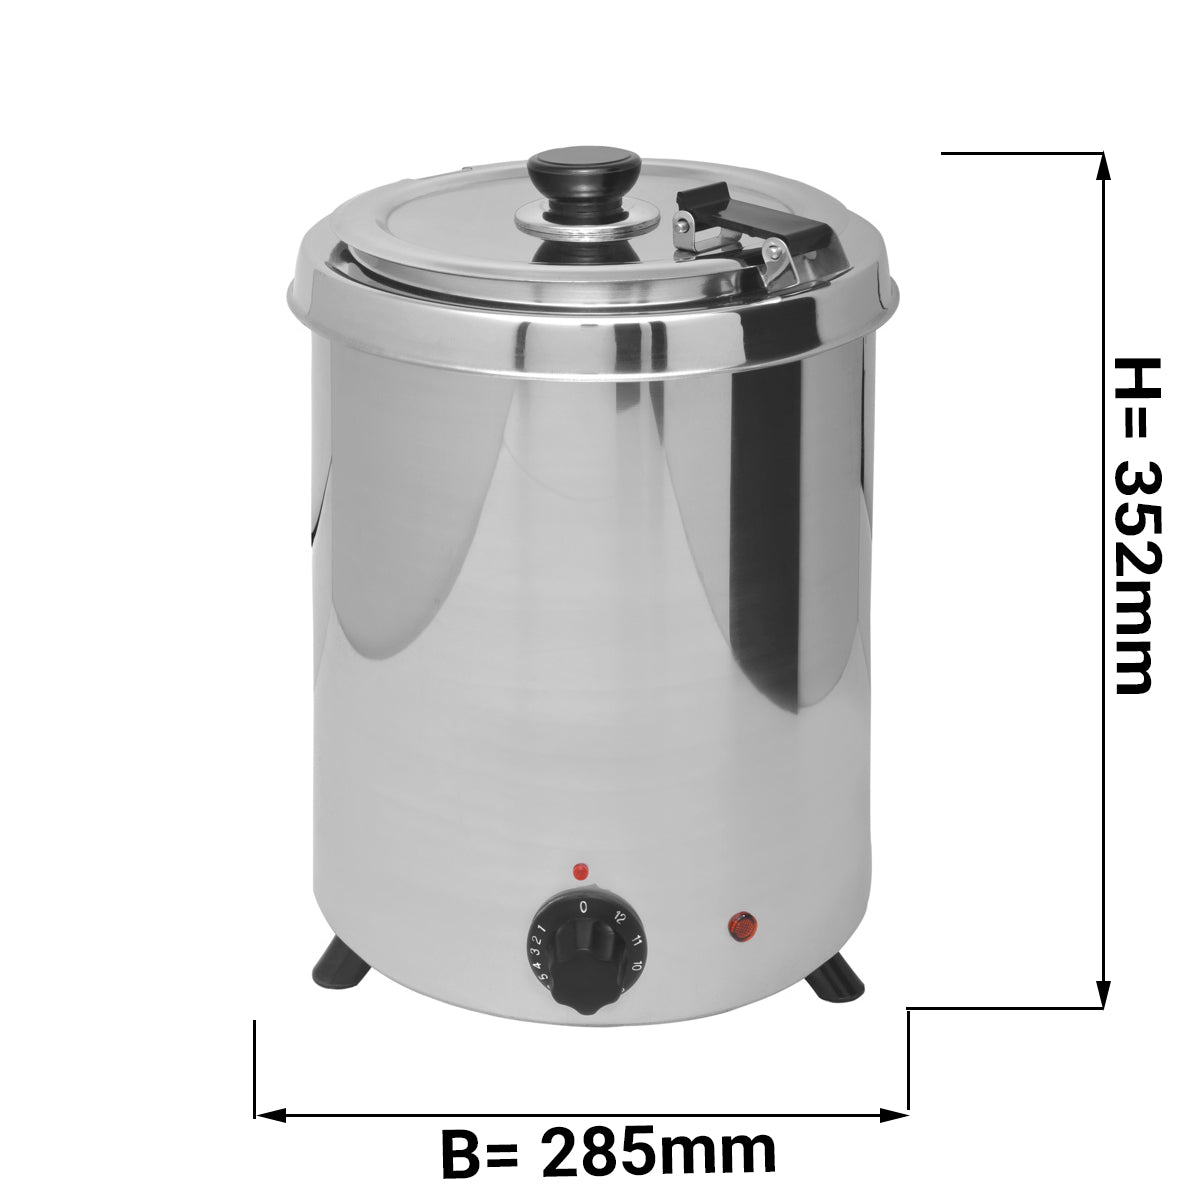 Suppevarmer - 5 liter - rustfritt stål